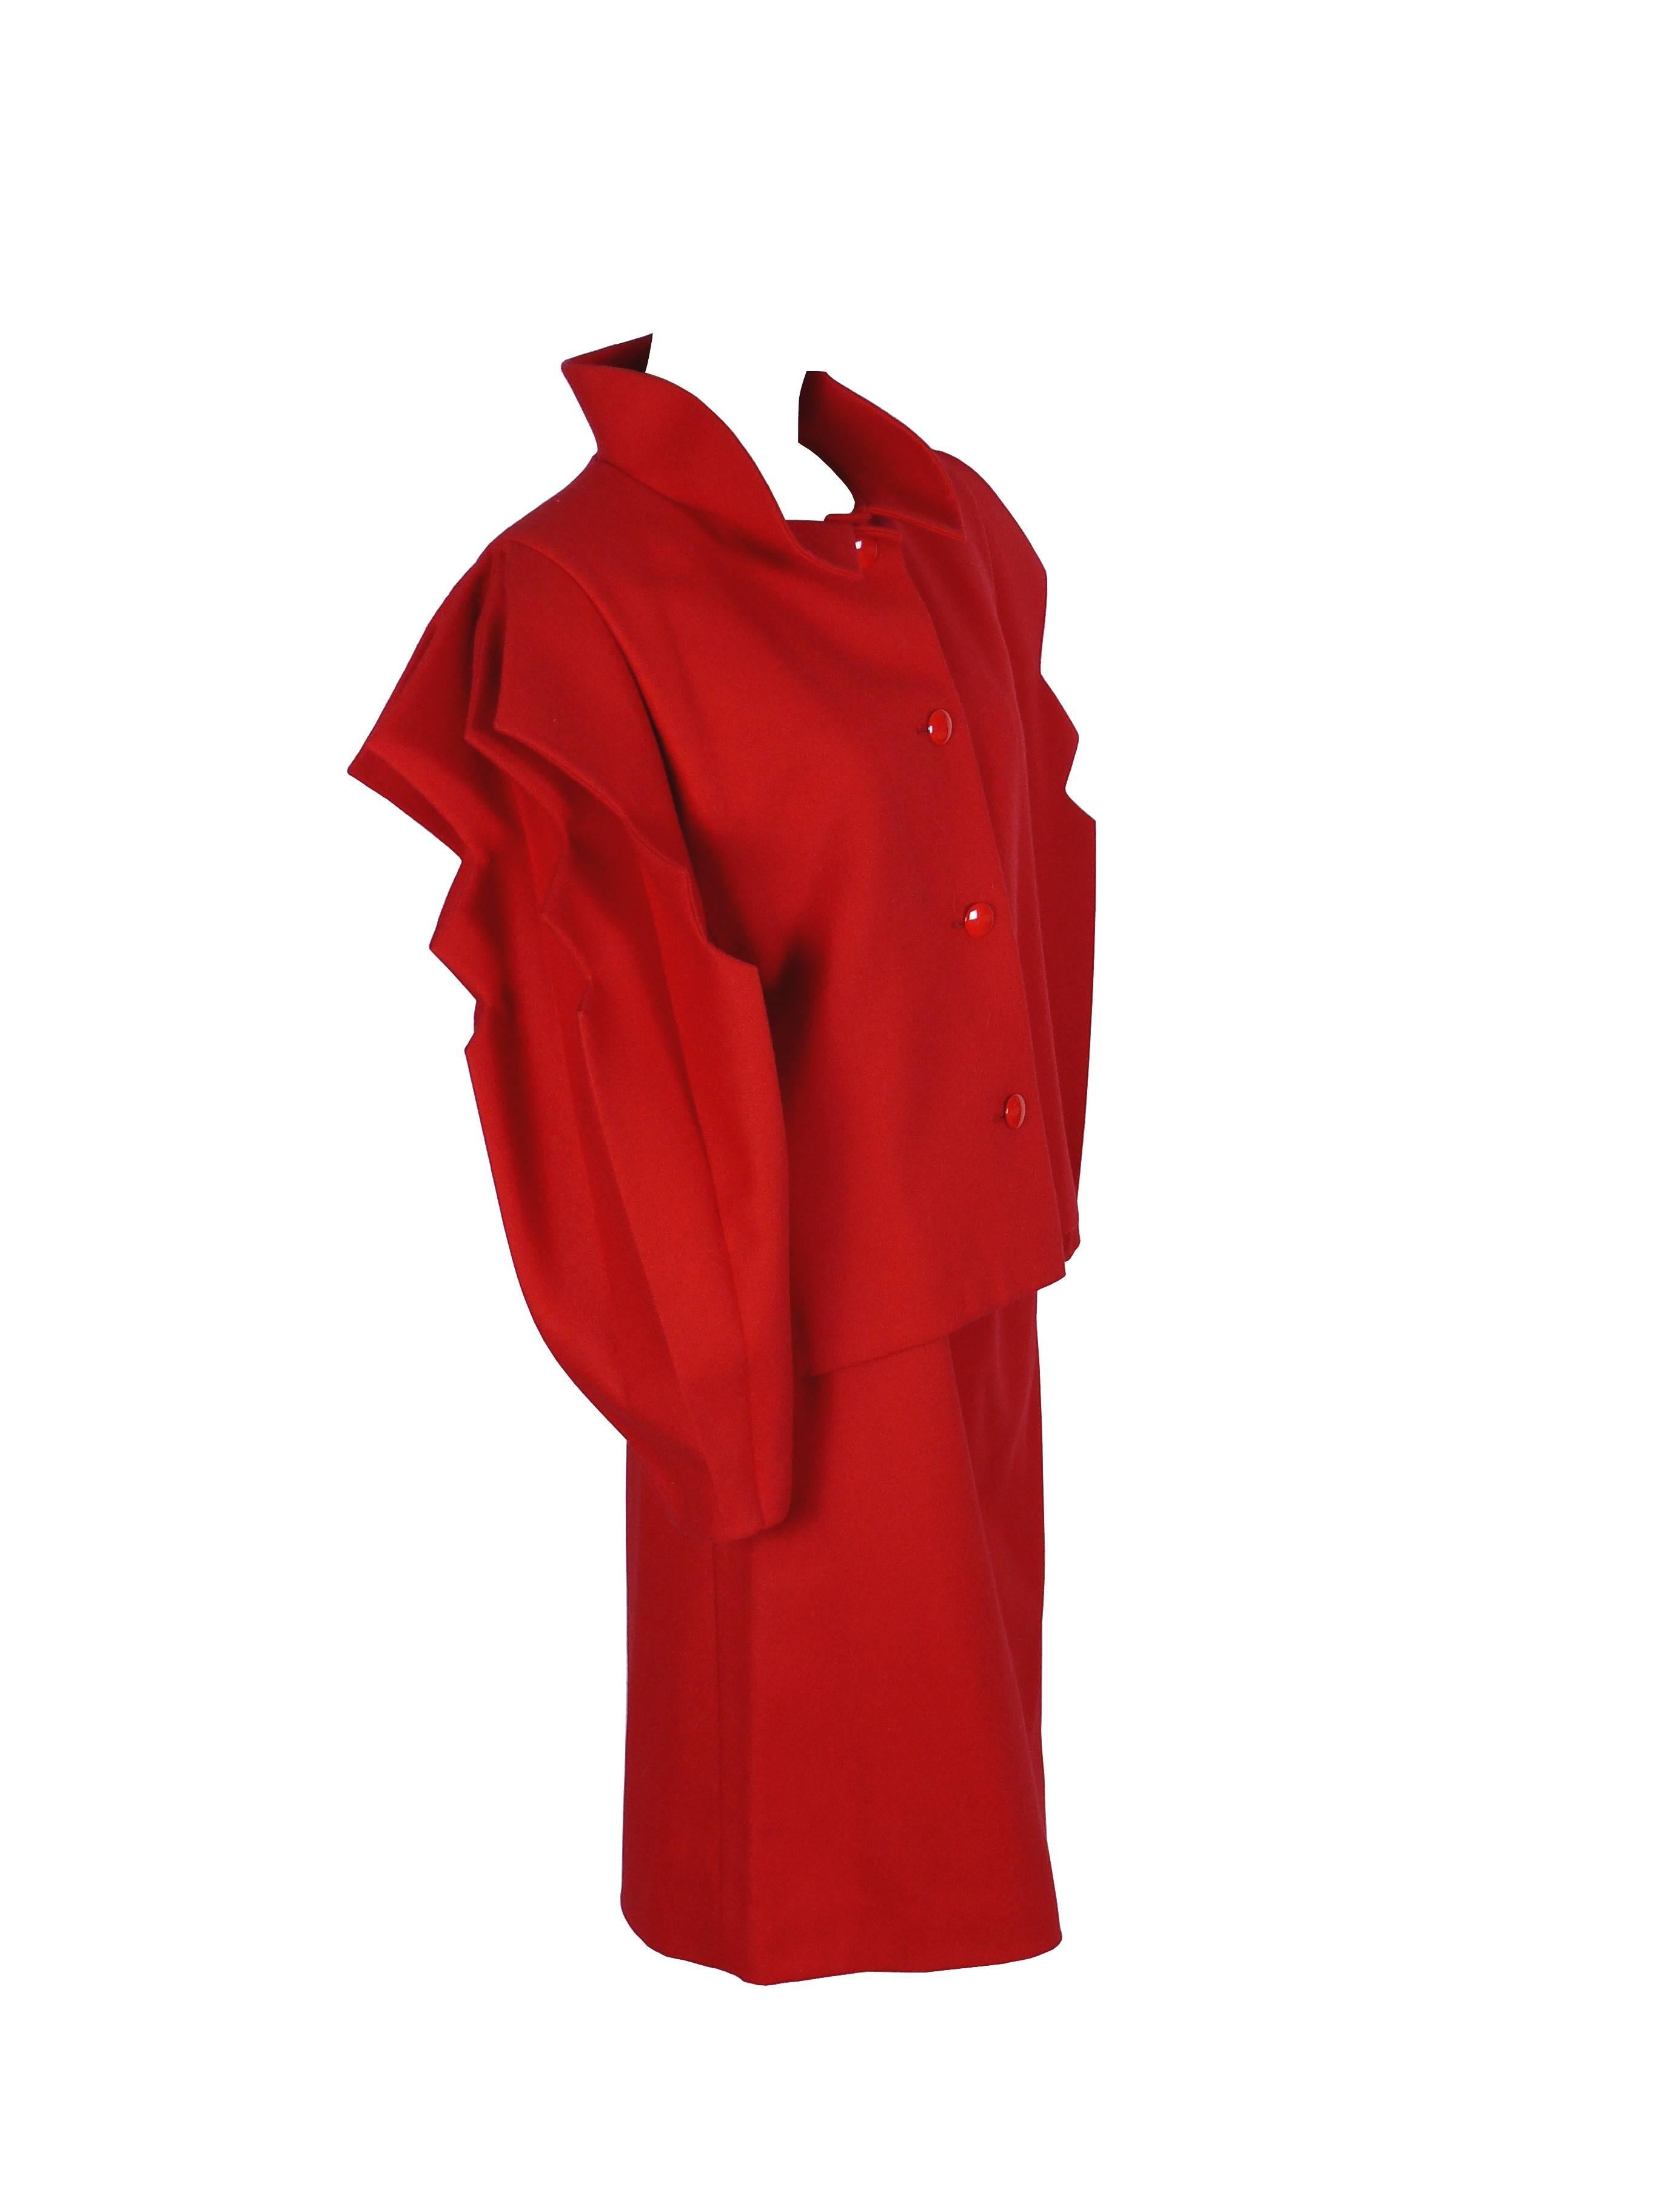 PIERRE CARDIN Prestige : tailleur jupe rouge intage.

Le blazer a de superbes manches accordéon découpées, un col rigide retroussé et une fermeture à boutons.

Jupe droite avec fermeture à glissière.

La veste et la jupe sont entièrement